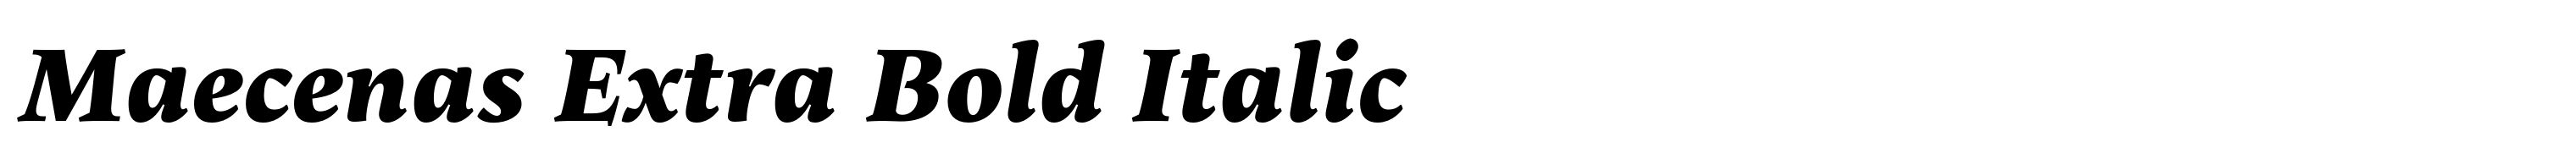 Maecenas Extra Bold Italic